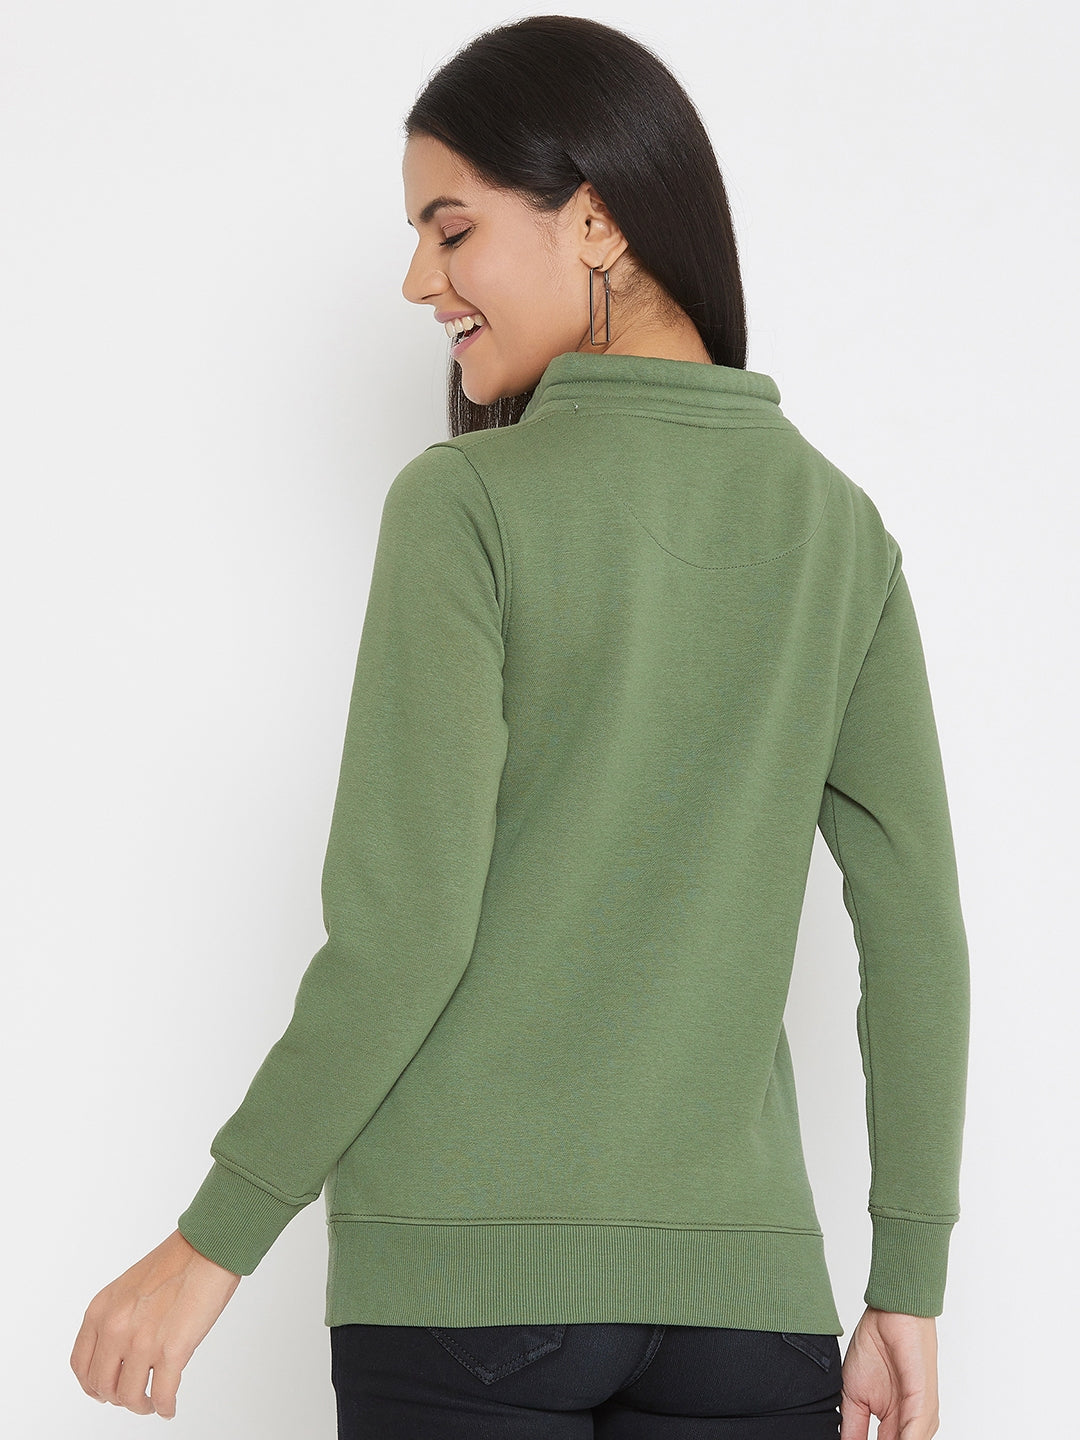 Olive Printed Mock Neck Sweatshirt - Women Sweatshirts